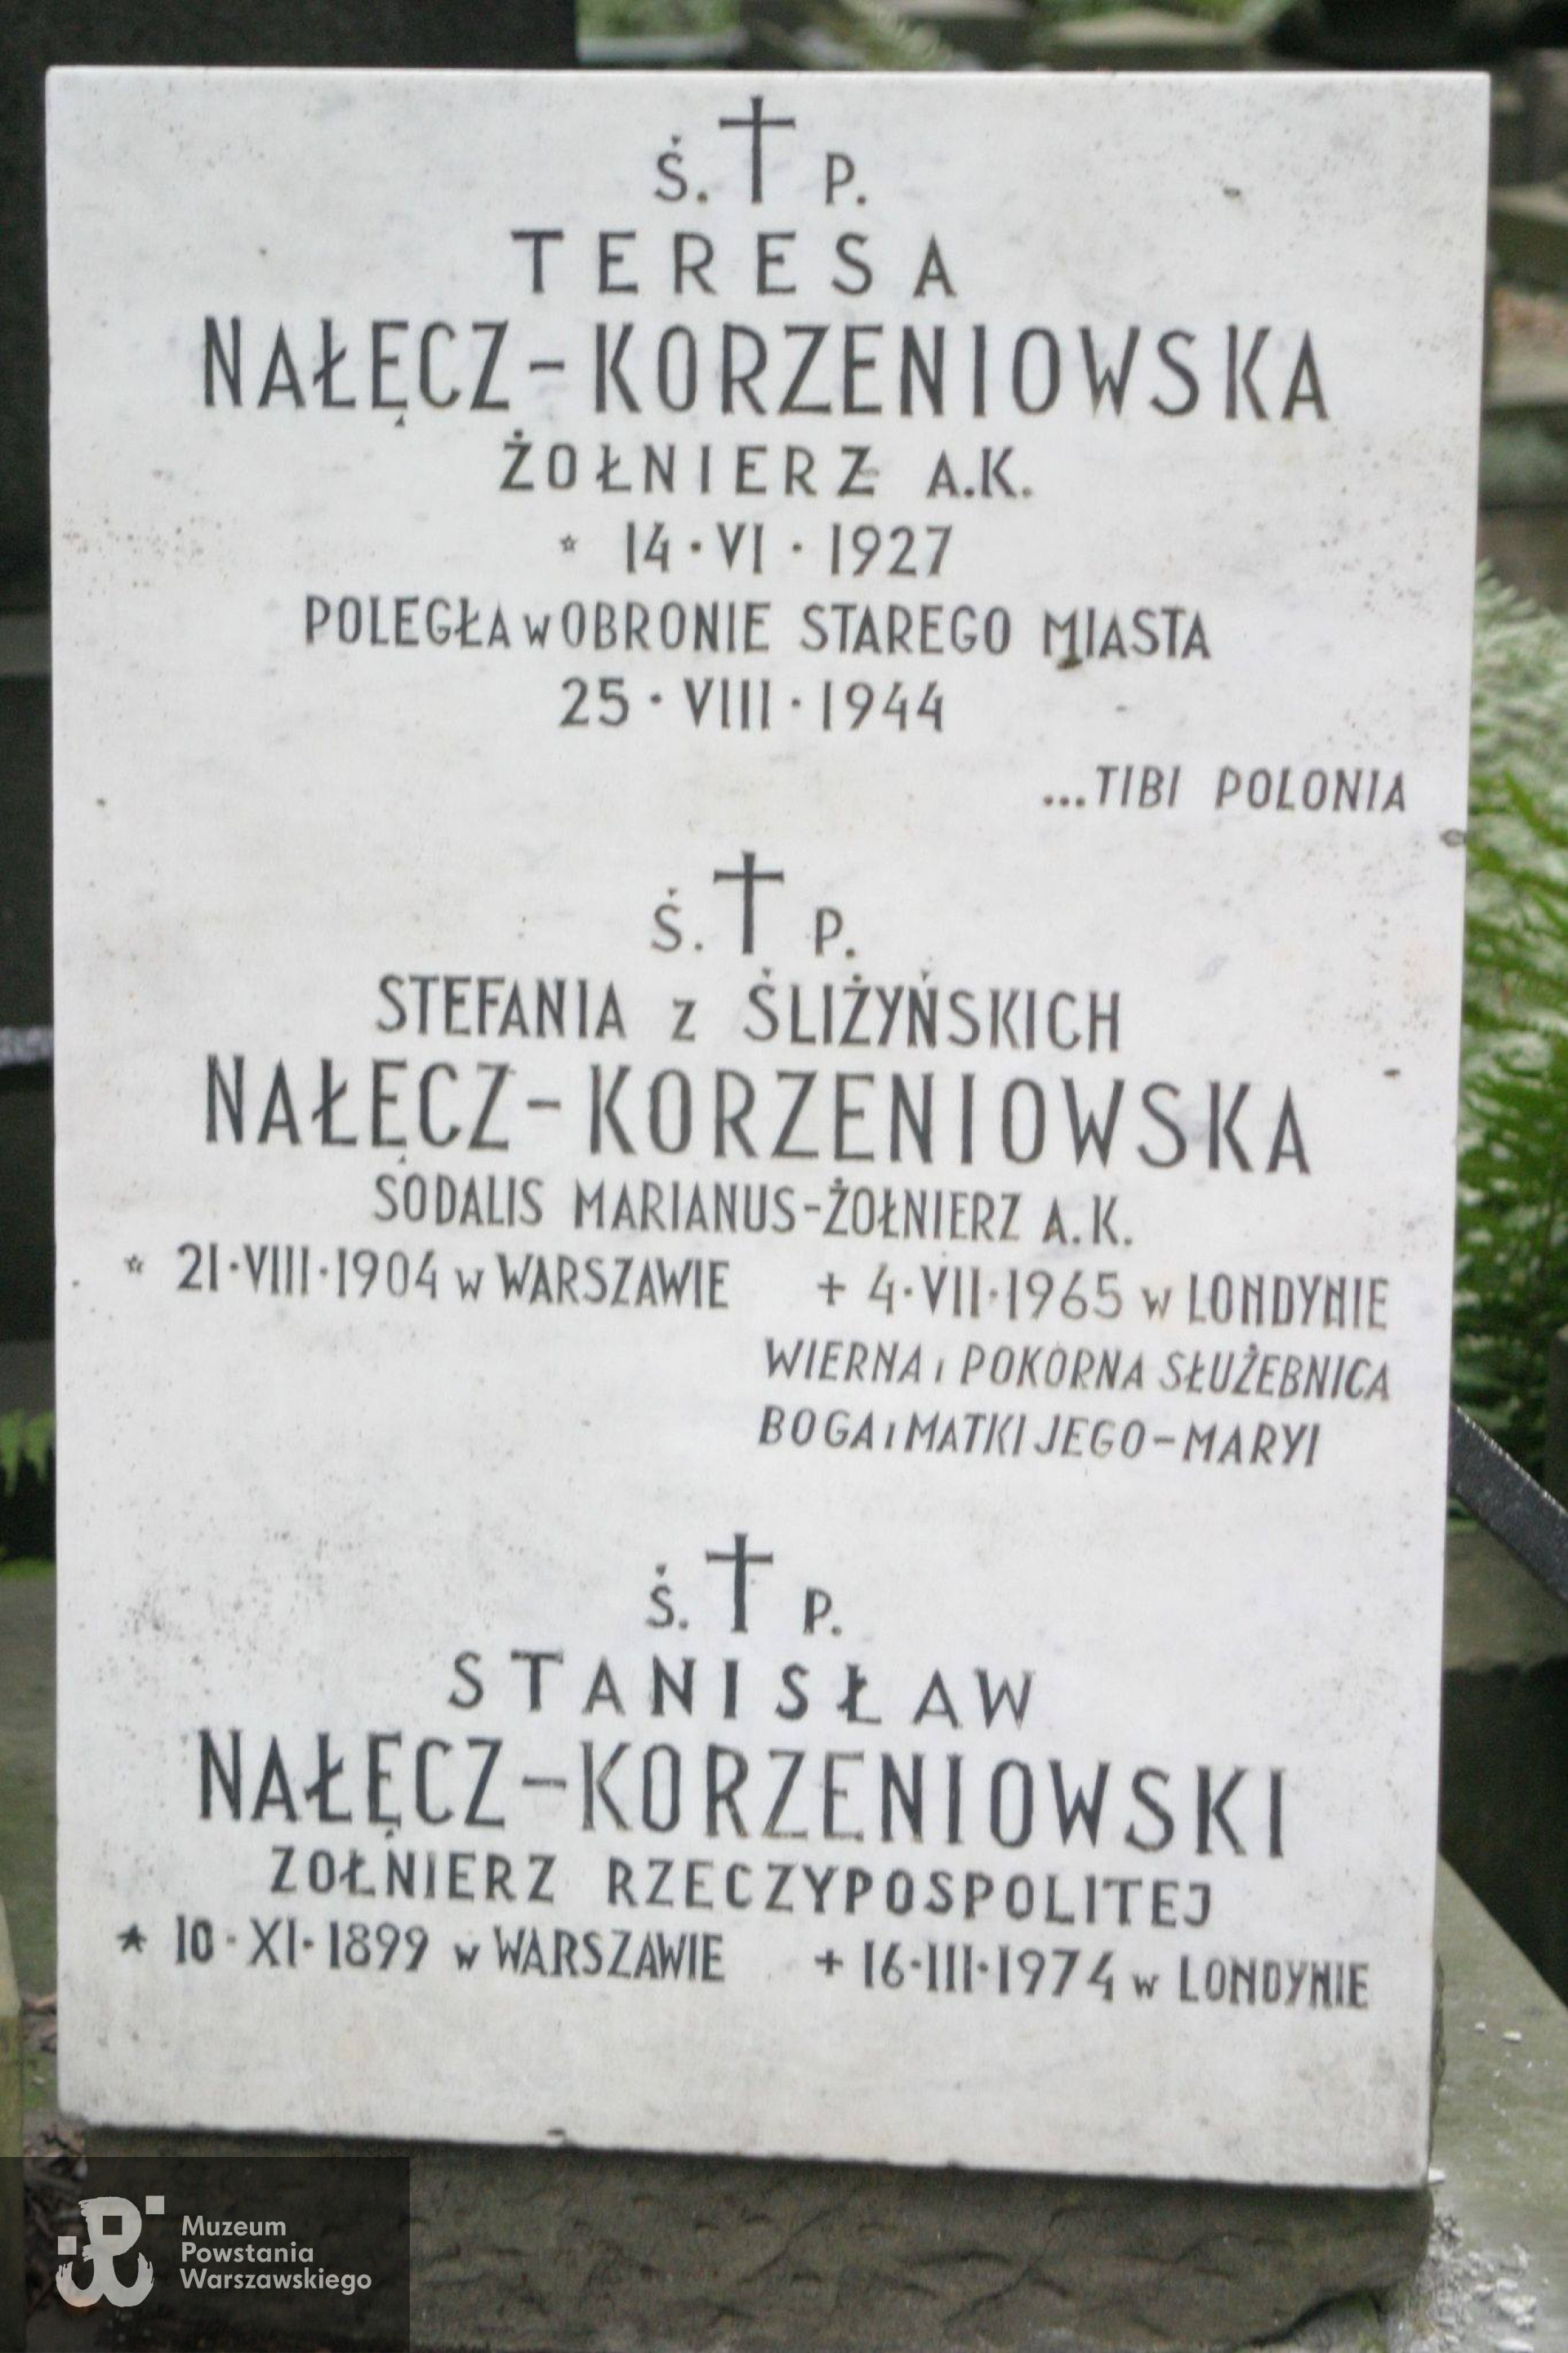 Cmentarz Powązkowski w Warszawie (Stare Powązki), kwatera 26, rząd 1, miejsce 18/18 - tablica epitafijna Teresy Nałęcz-Korzeniowskiej. Fot. udostępnił p. Jan Wawszczyk.